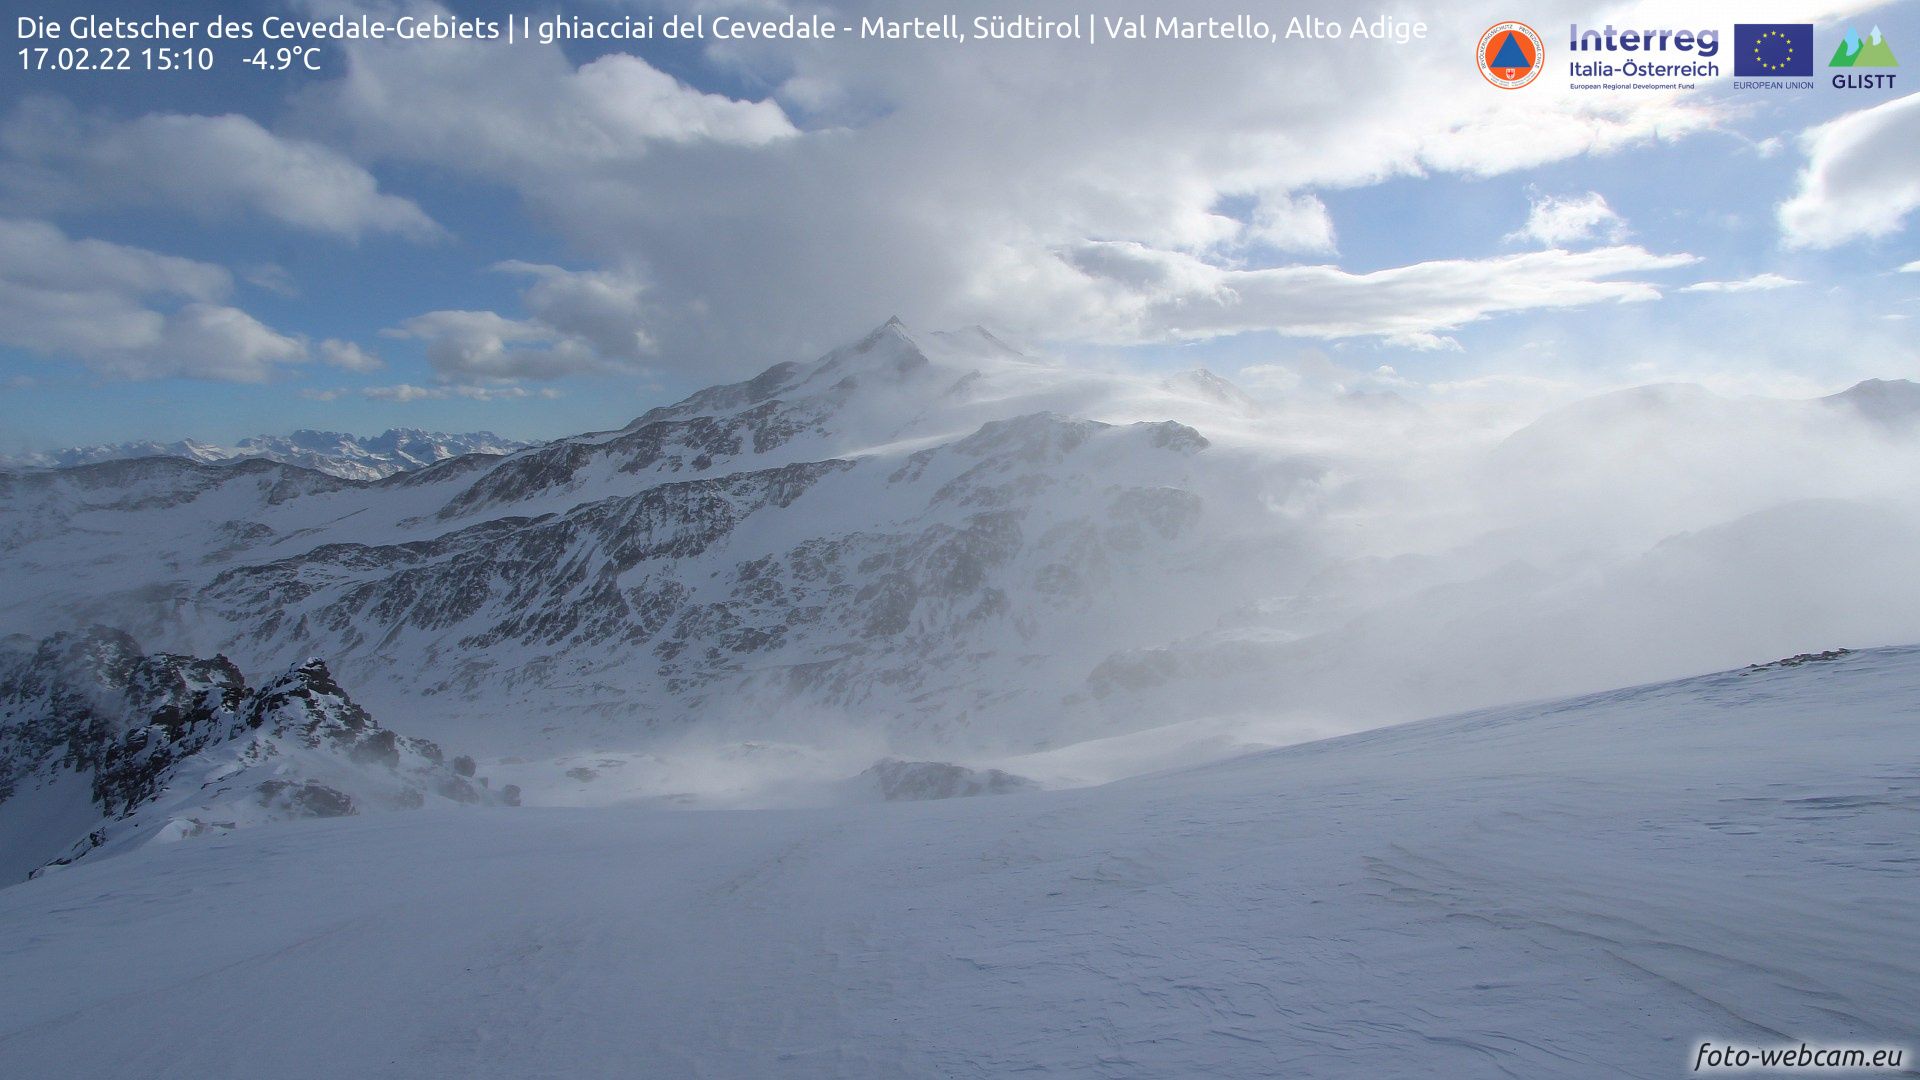 Severe storm in the Alps (foto-webcam.eu)